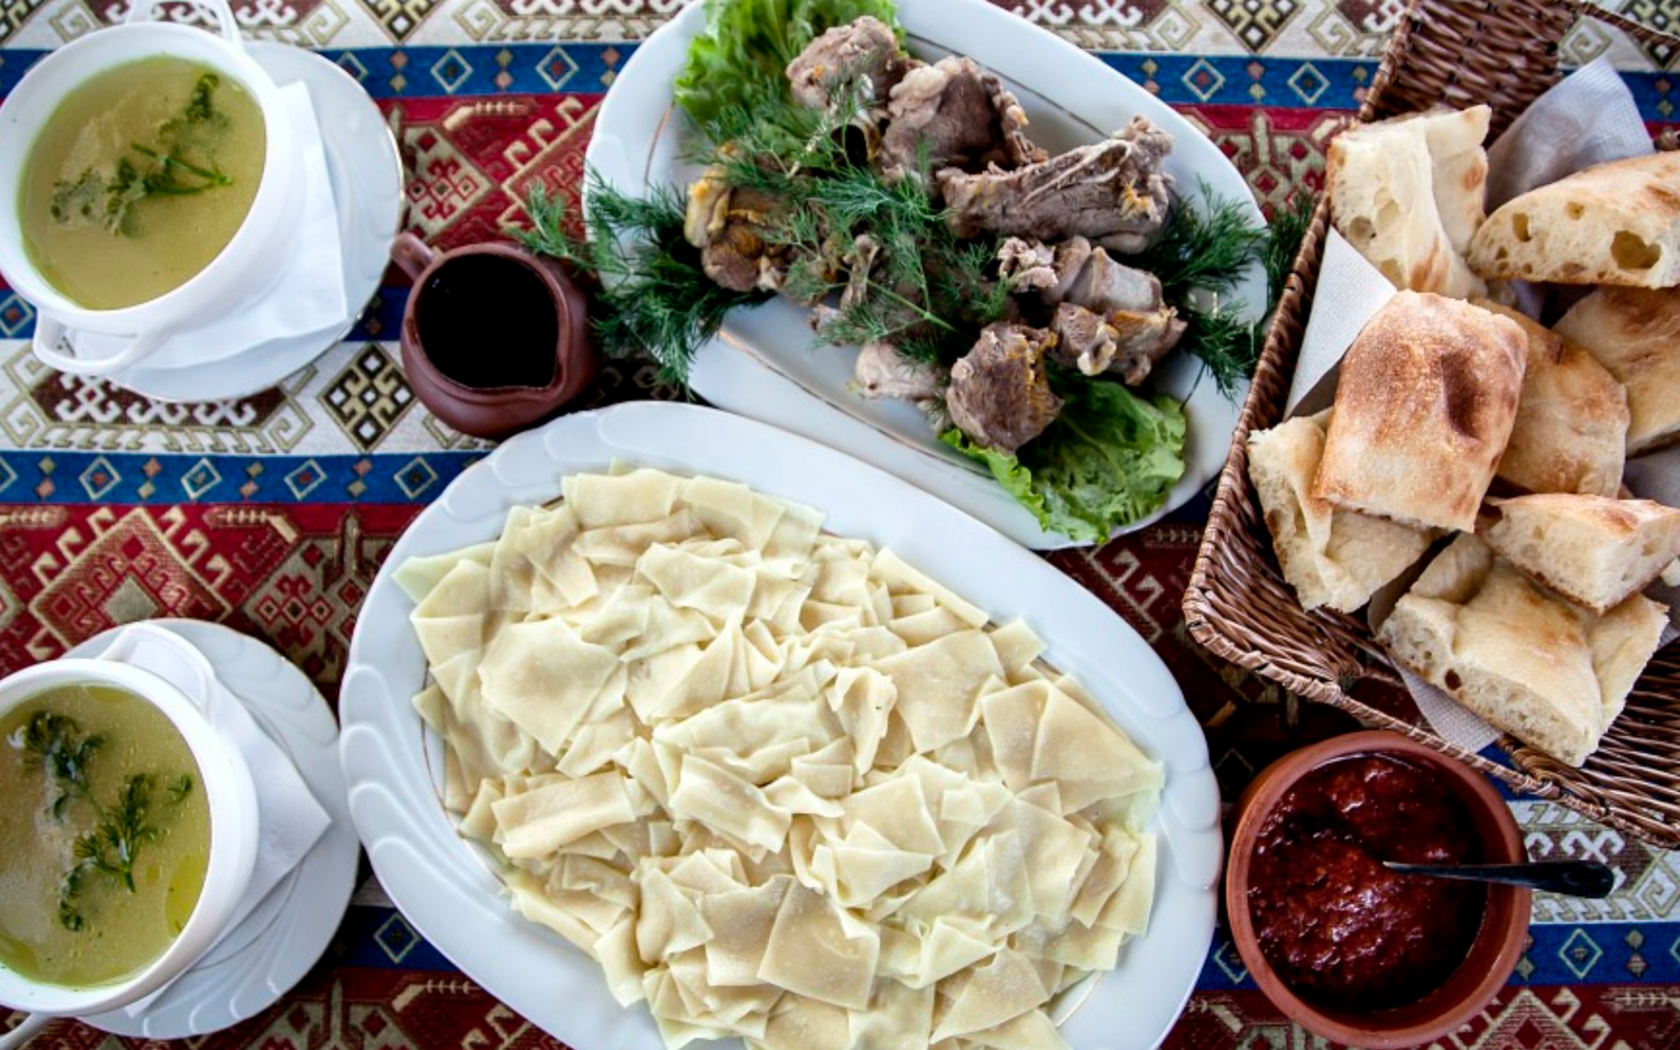 Хинкал махачкала. Хинкал Дагестанский Лакский. Национальная кухня Дагестана хинкал. Дагестанское блюдо хинкал. Национальная еда хинкал Дагестанская.